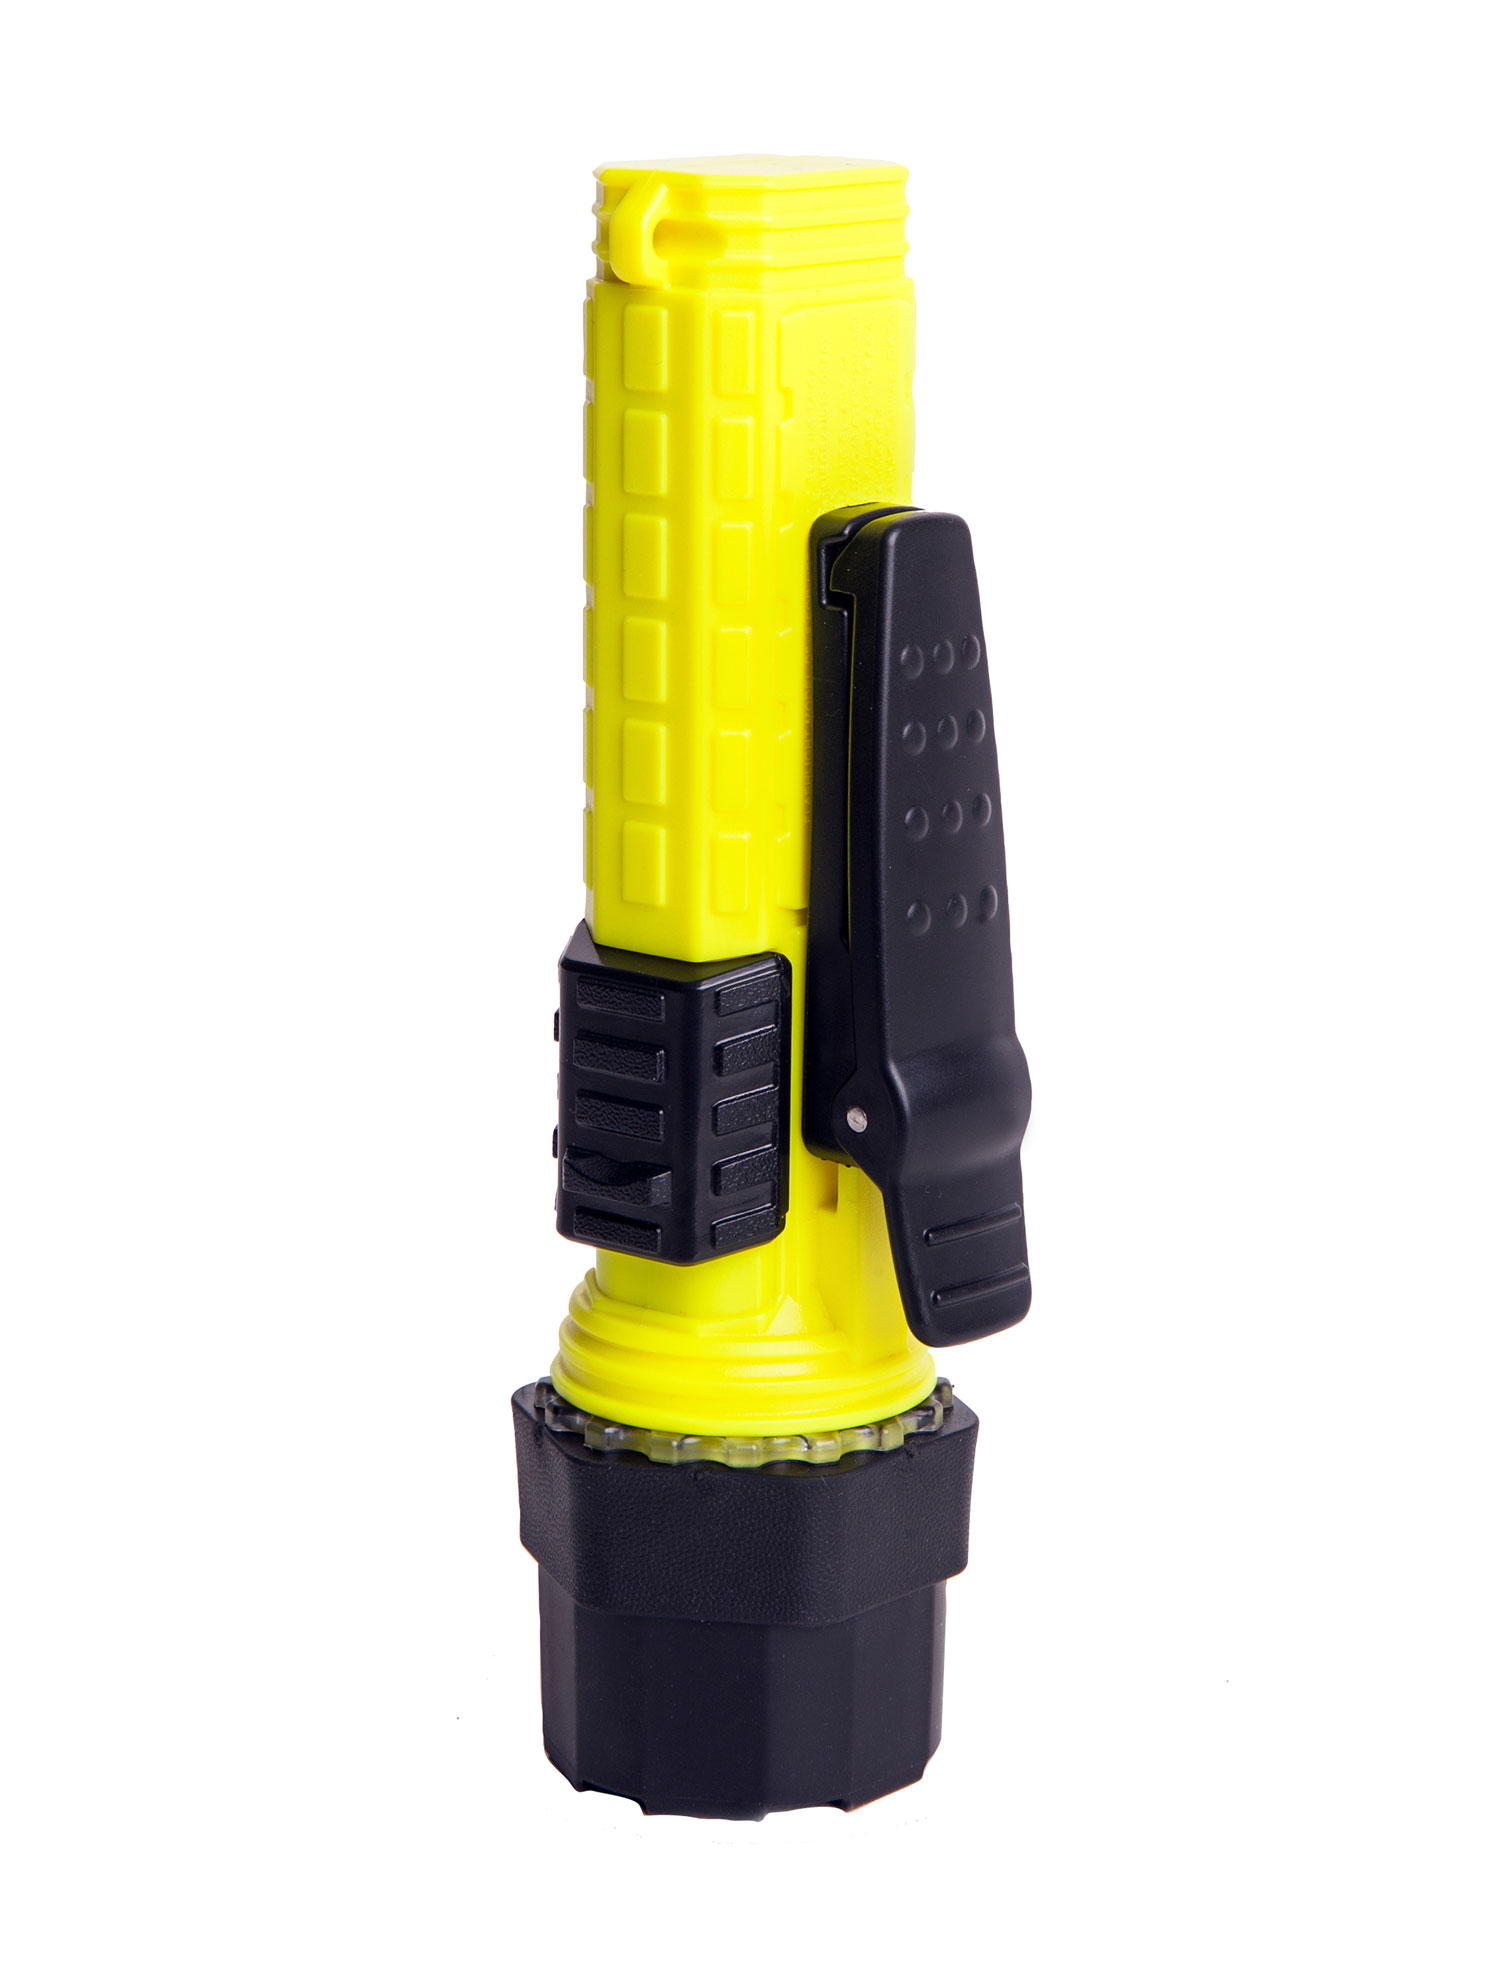 LED-Handleuchte mit ATEX 1G-Zulassung, gelb